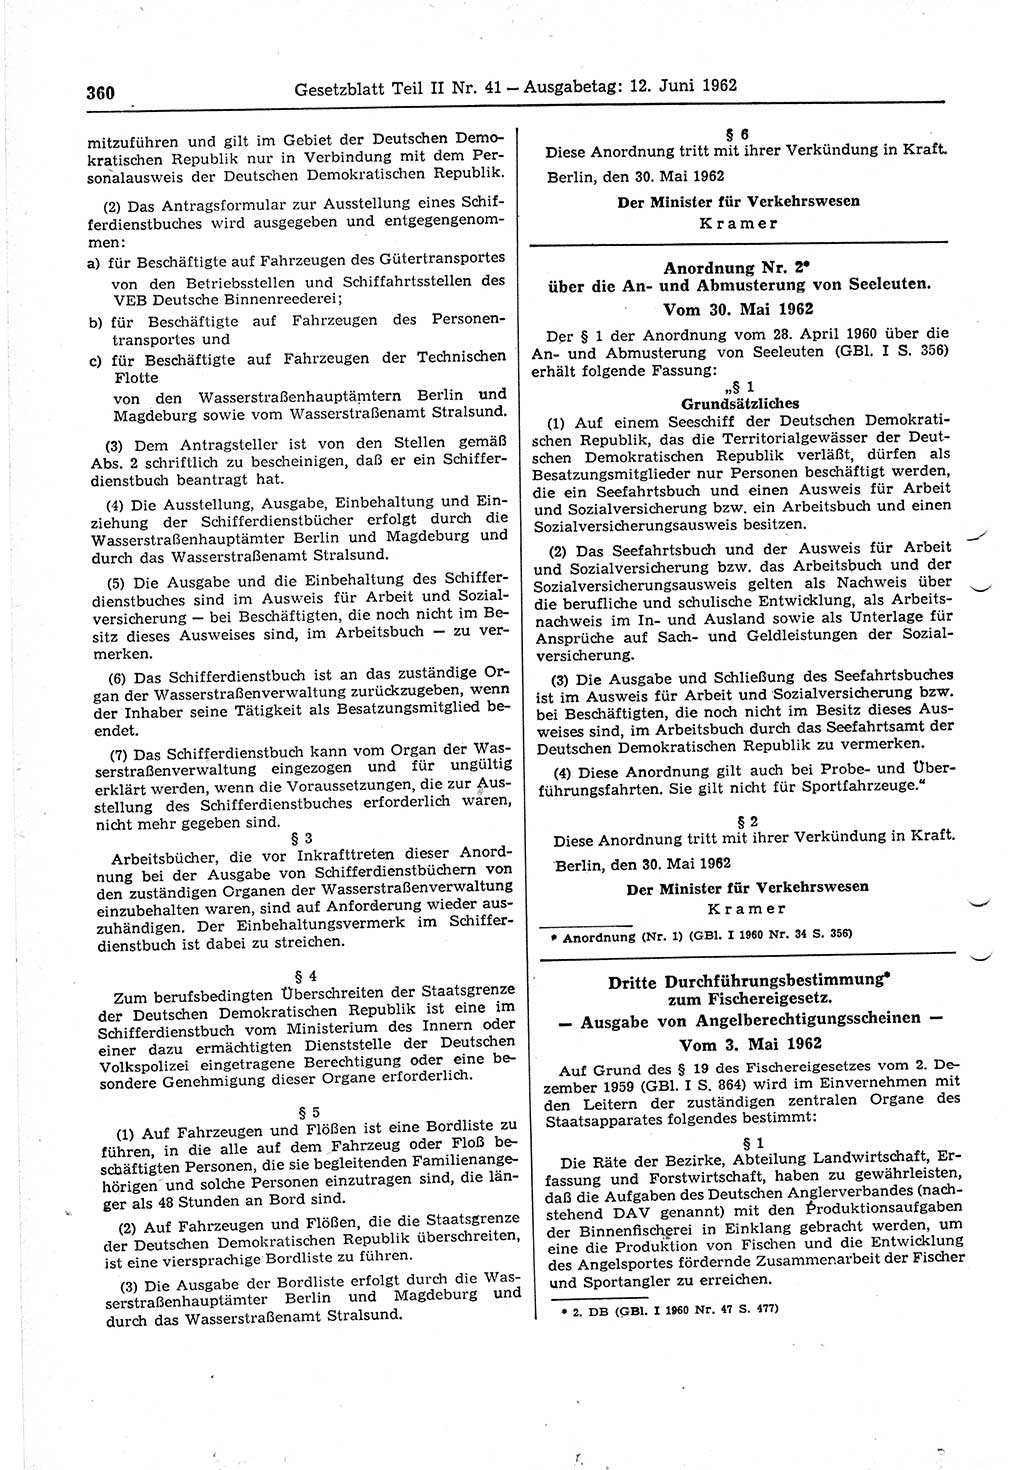 Gesetzblatt (GBl.) der Deutschen Demokratischen Republik (DDR) Teil ⅠⅠ 1962, Seite 360 (GBl. DDR ⅠⅠ 1962, S. 360)